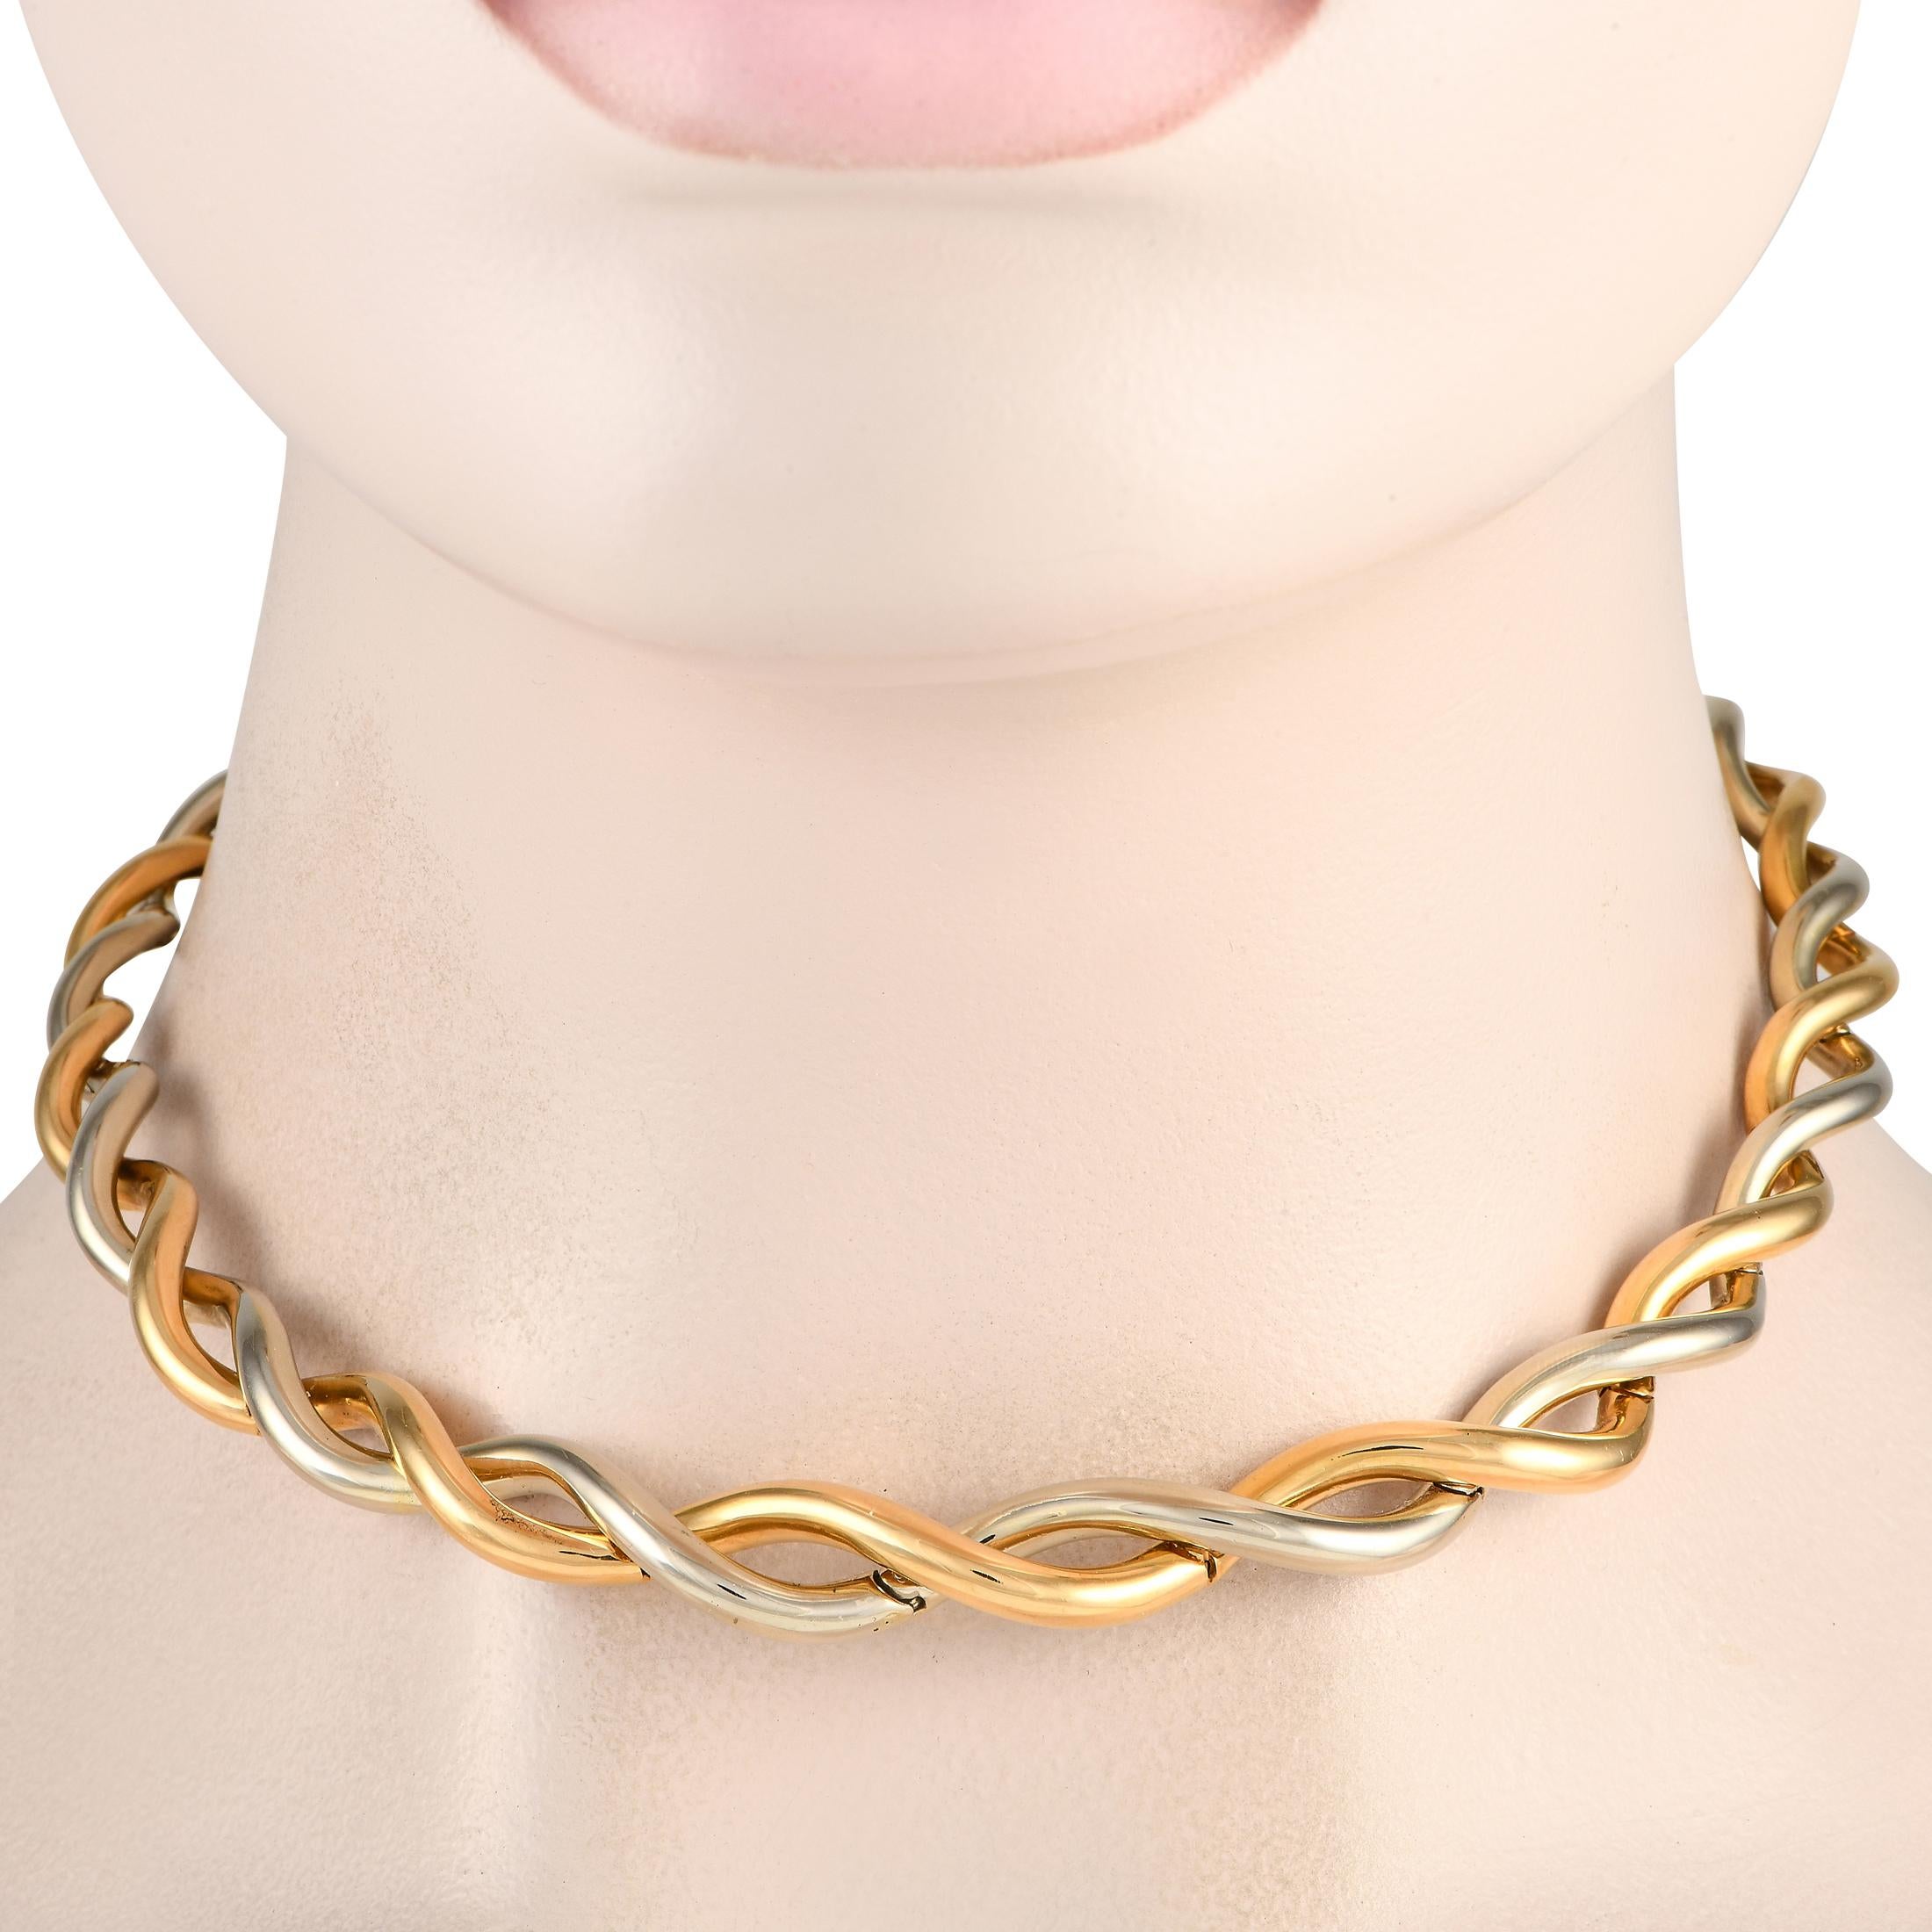 Mit dieser Halskette von Van Cleef & Arpels verleihen Sie jedem Outfit das gewisse Etwas. Er besteht aus zwei klobigen und kurvigen Corden aus massivem 18-karätigem Weiß- und Gelbgold, die sich drehen und überlappen. Diese Halskette im Choker-Stil